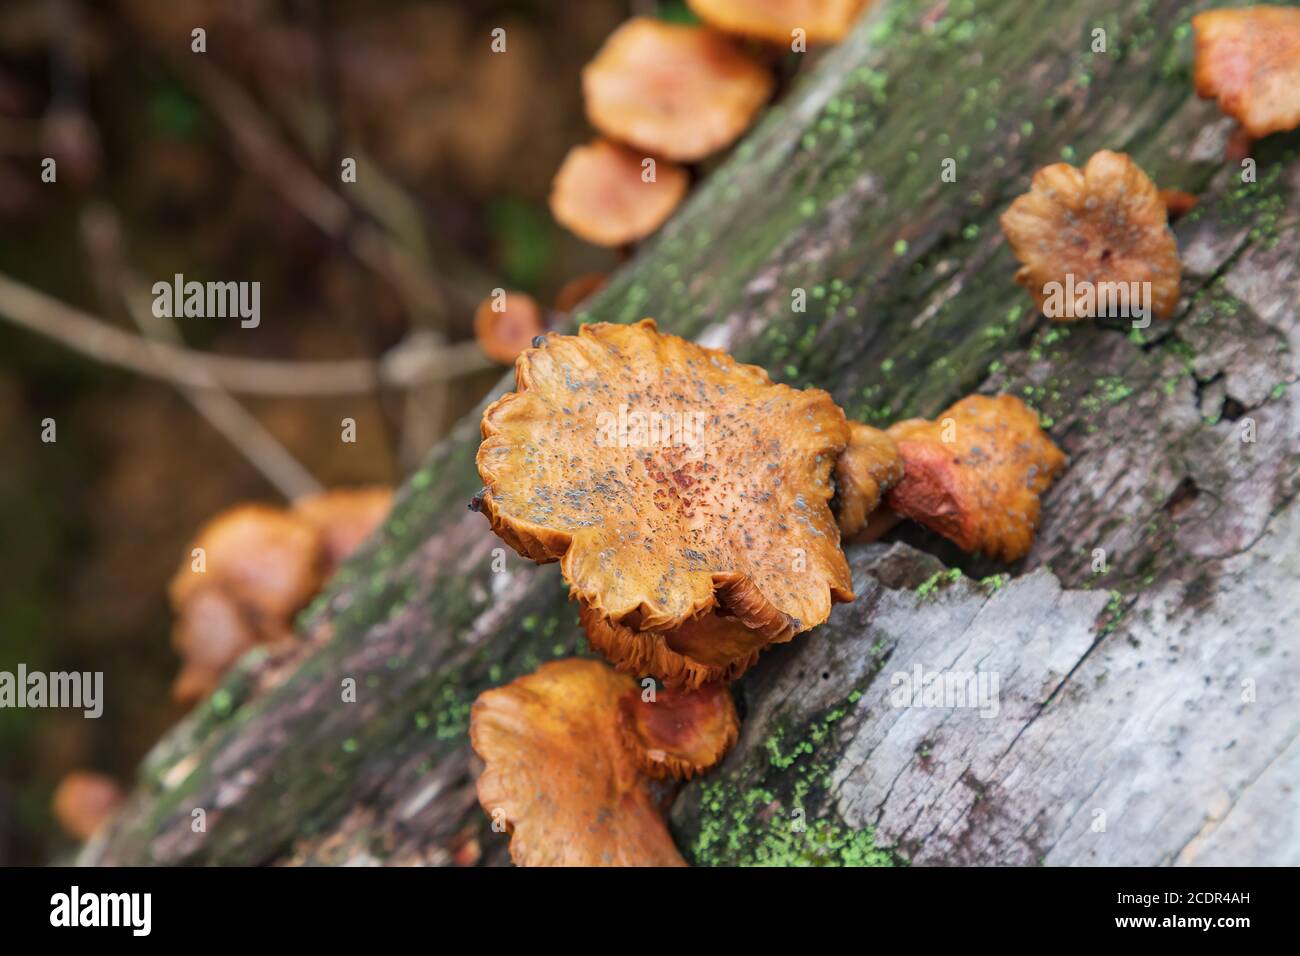 Pilze wachsen auf einem verfallenden Kokosnussbaum Stamm Stockfoto